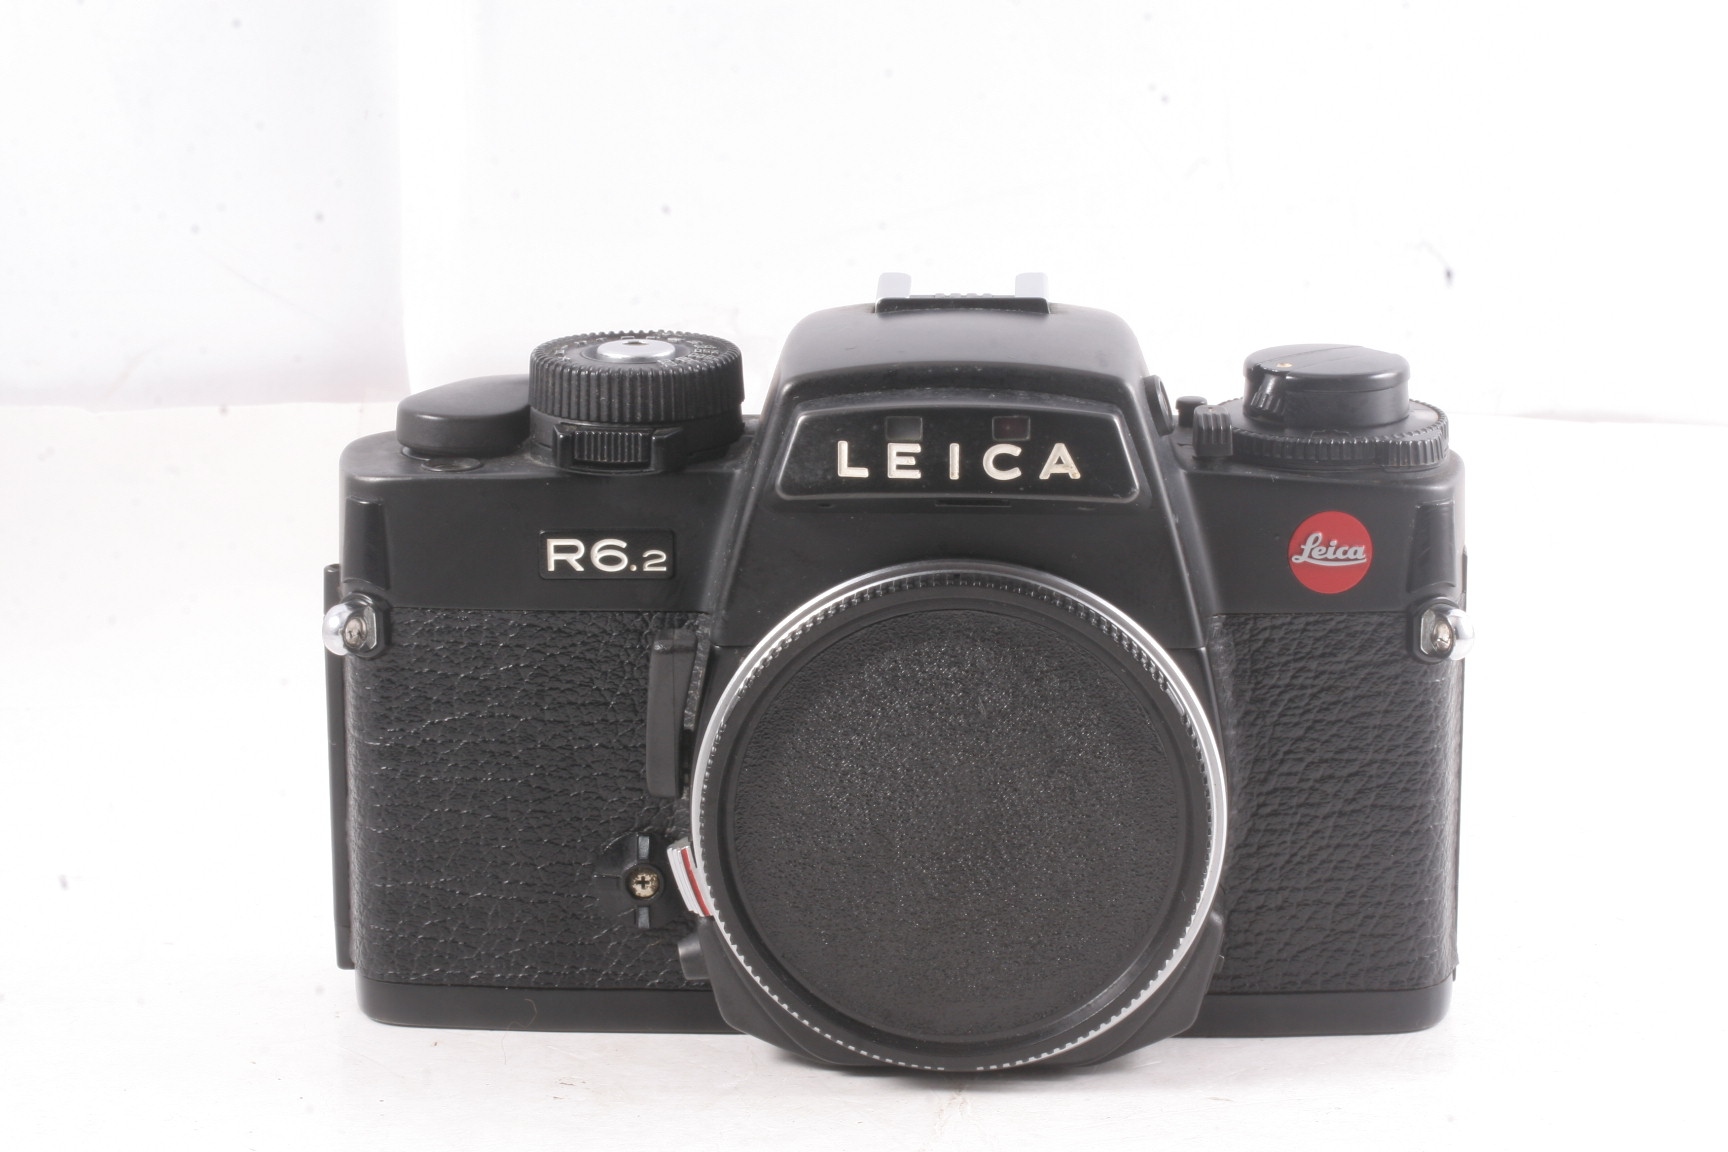 95新/徕卡/Leica R6.2 全机械单反胶片 黑色相机 